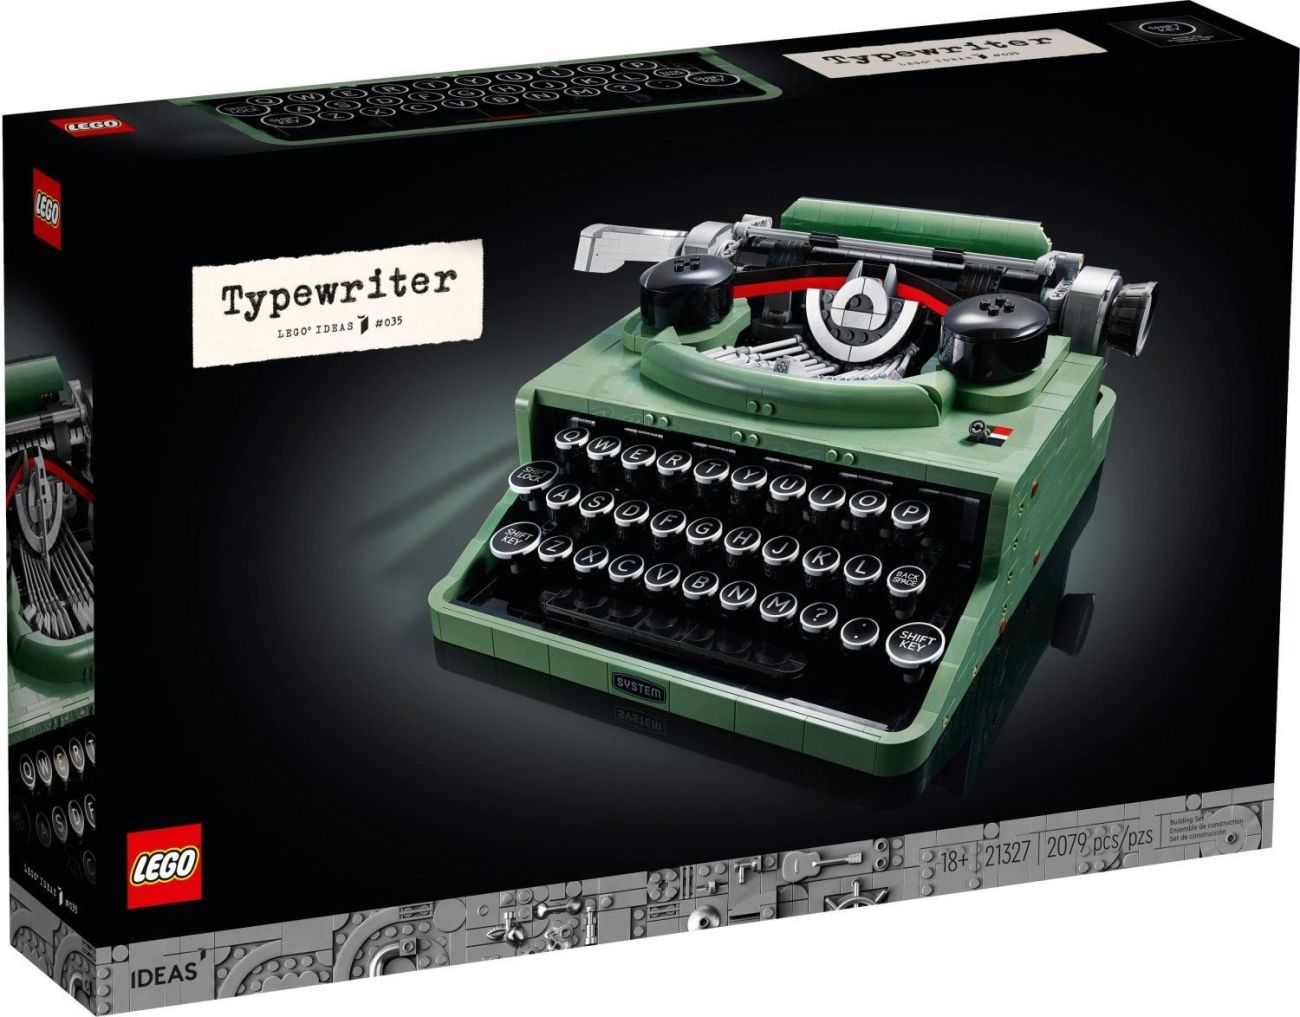 LEGO IDEAS 21327 Typewriter offiziell vorgestellt